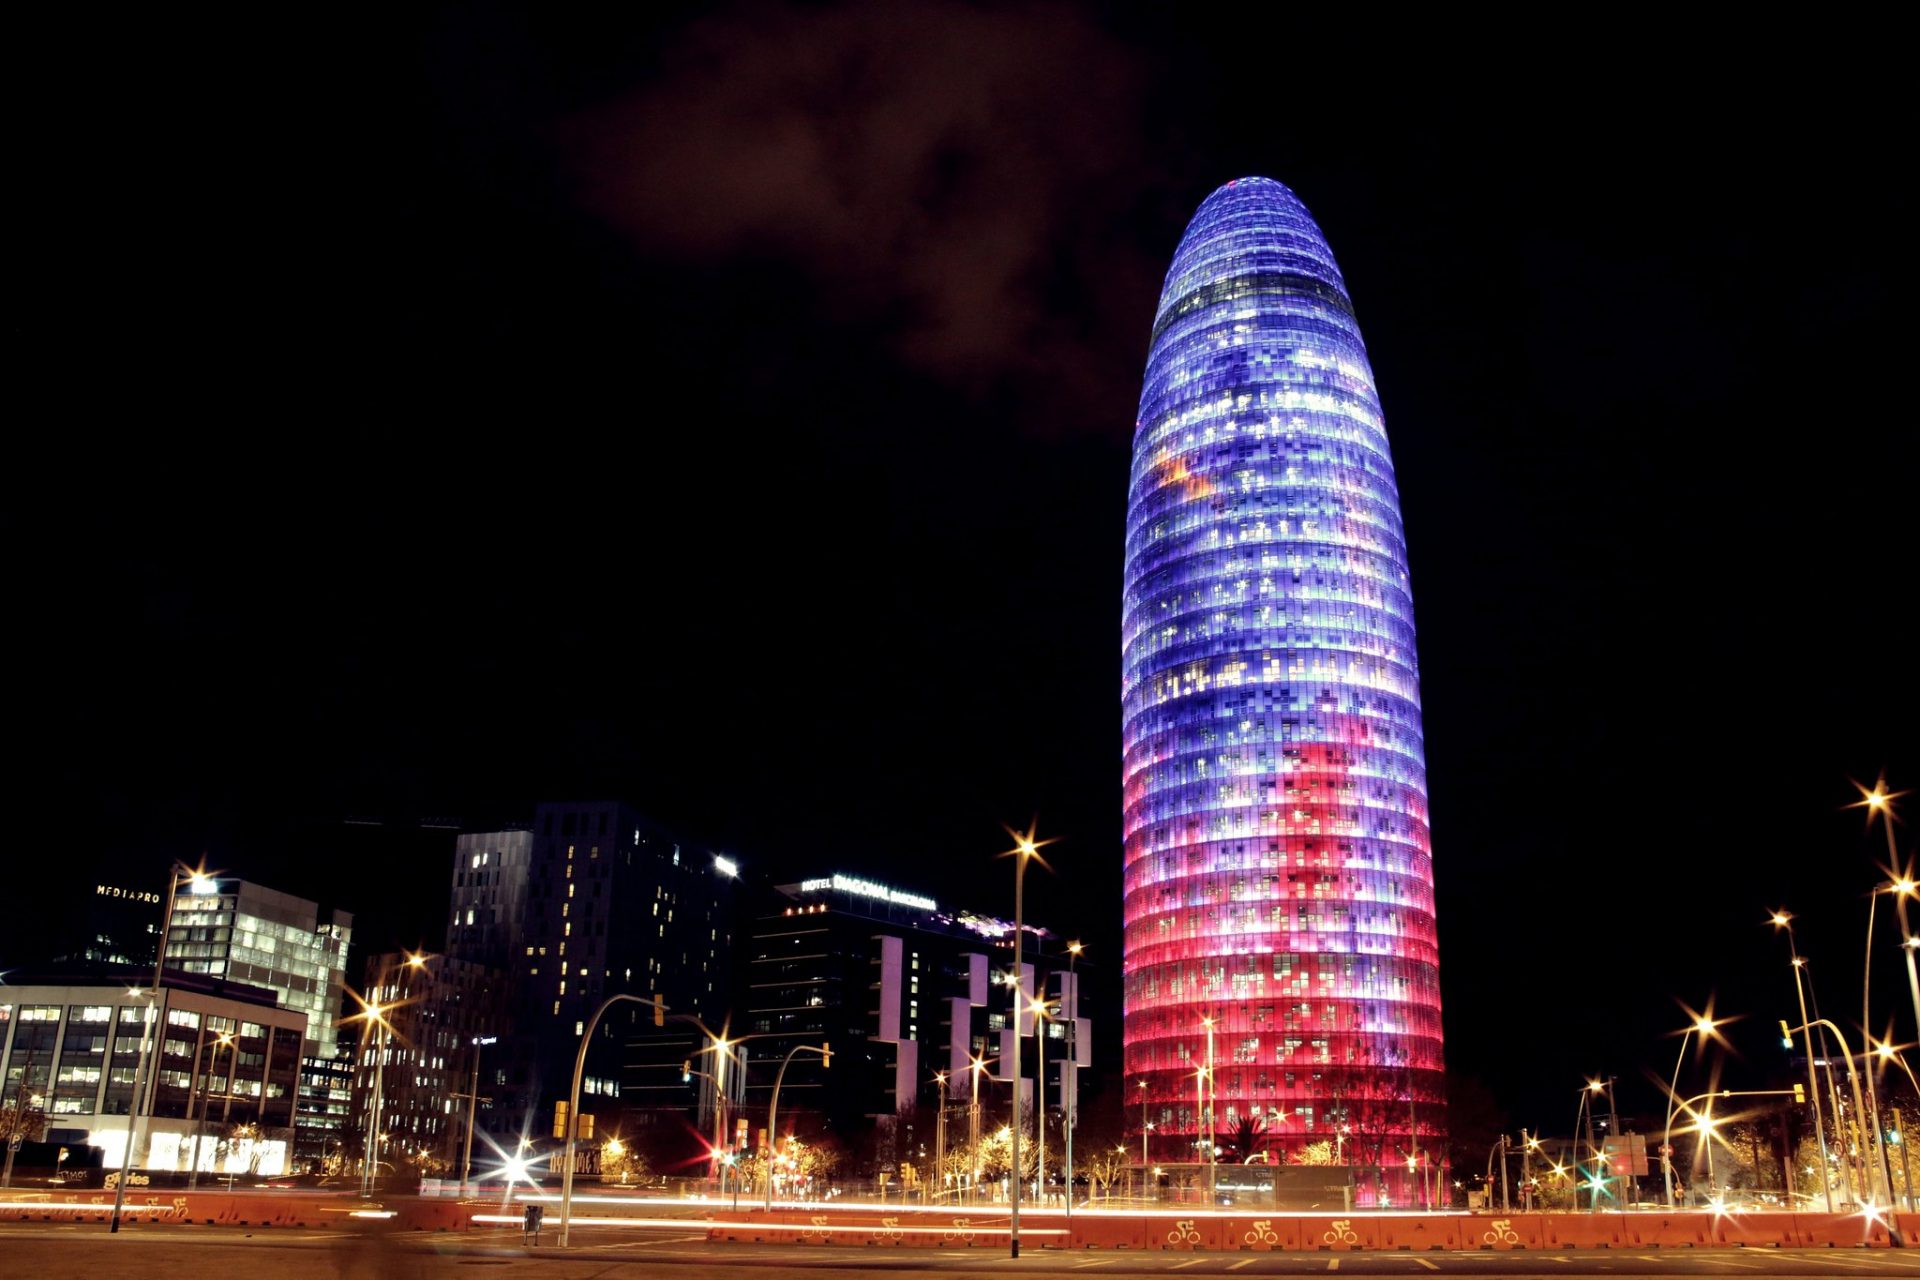 Barcelona Agbar Tower Alex Rud Flickr